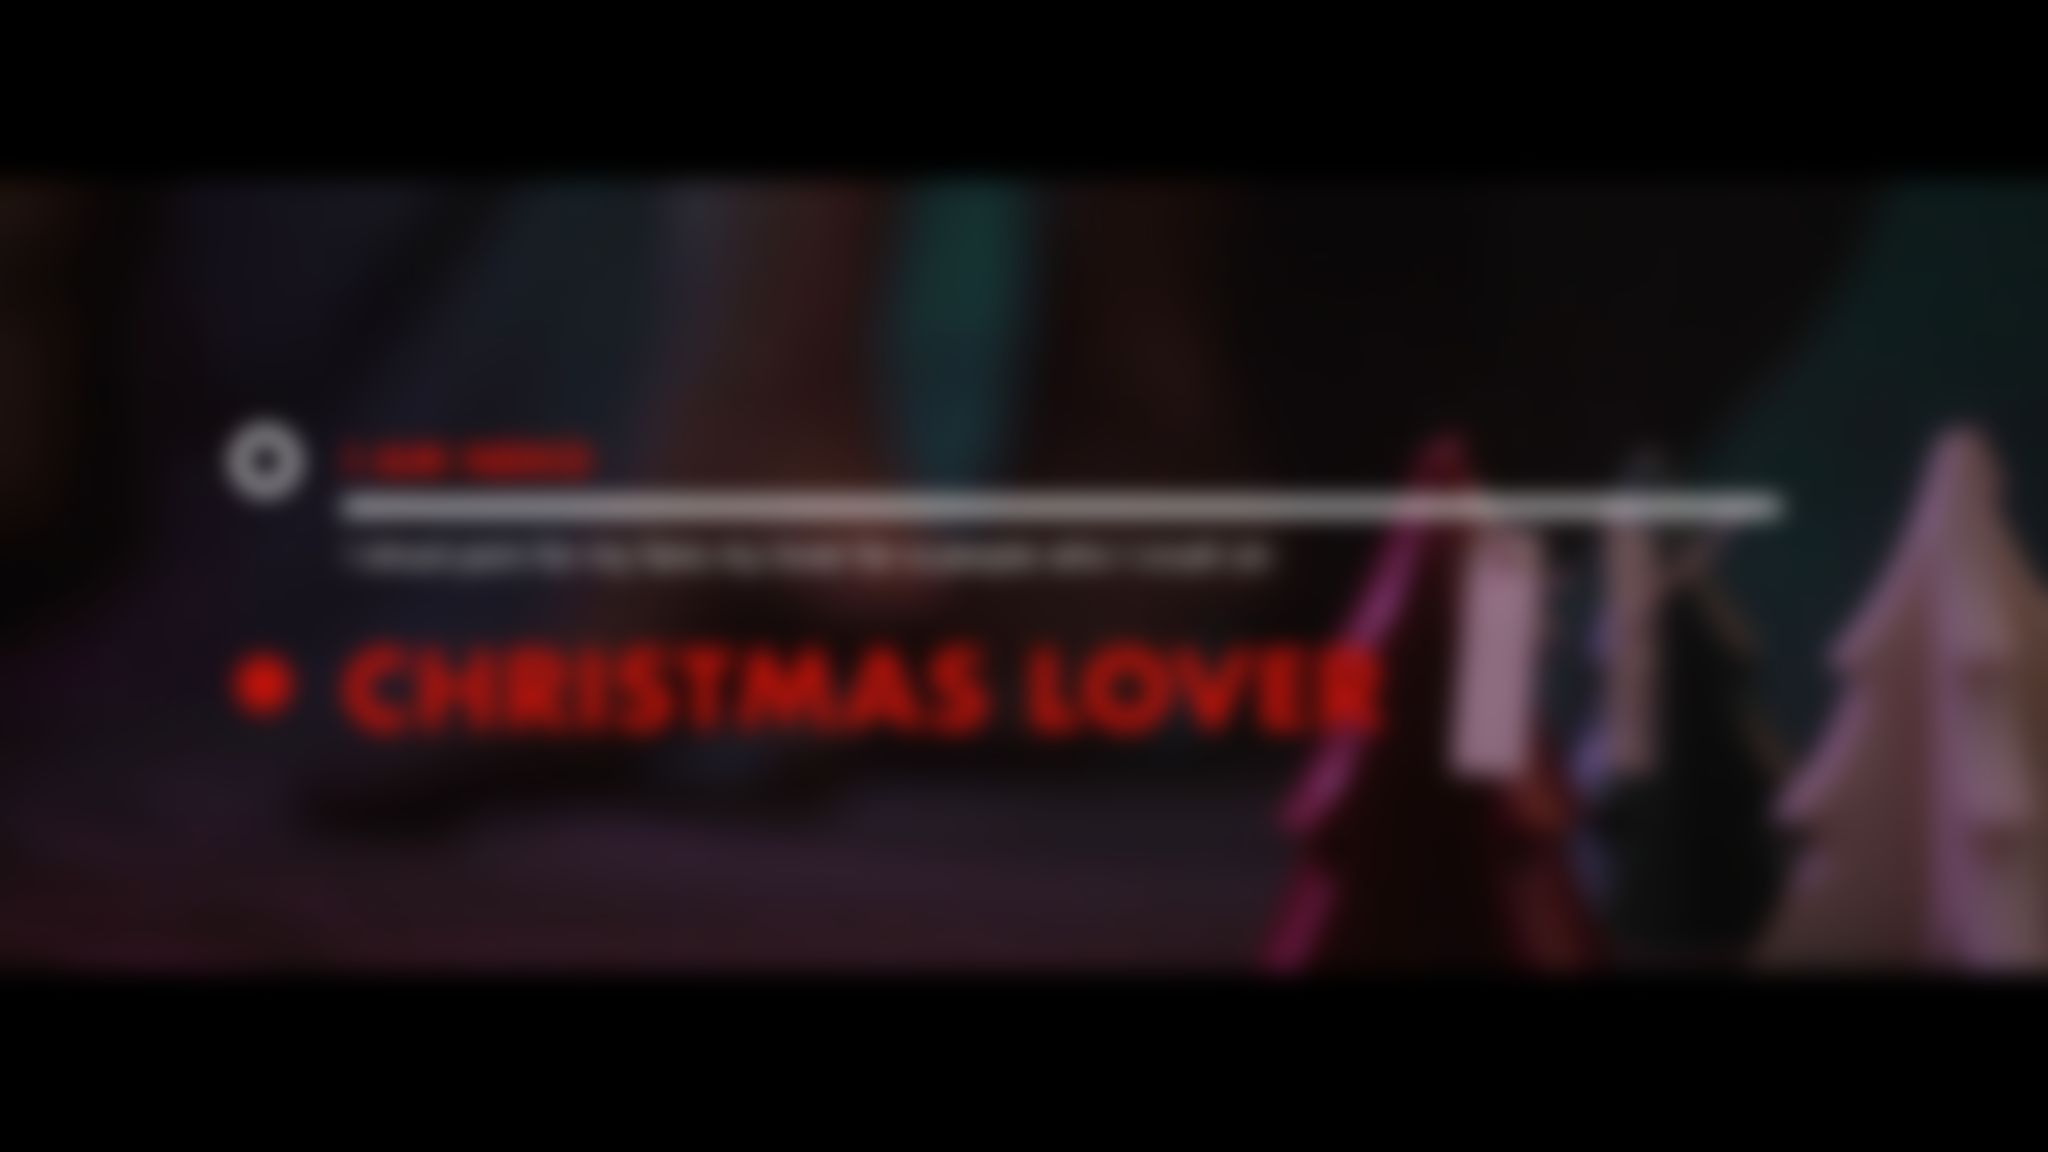 iam_neko : I AM NEKO - Christmas lover